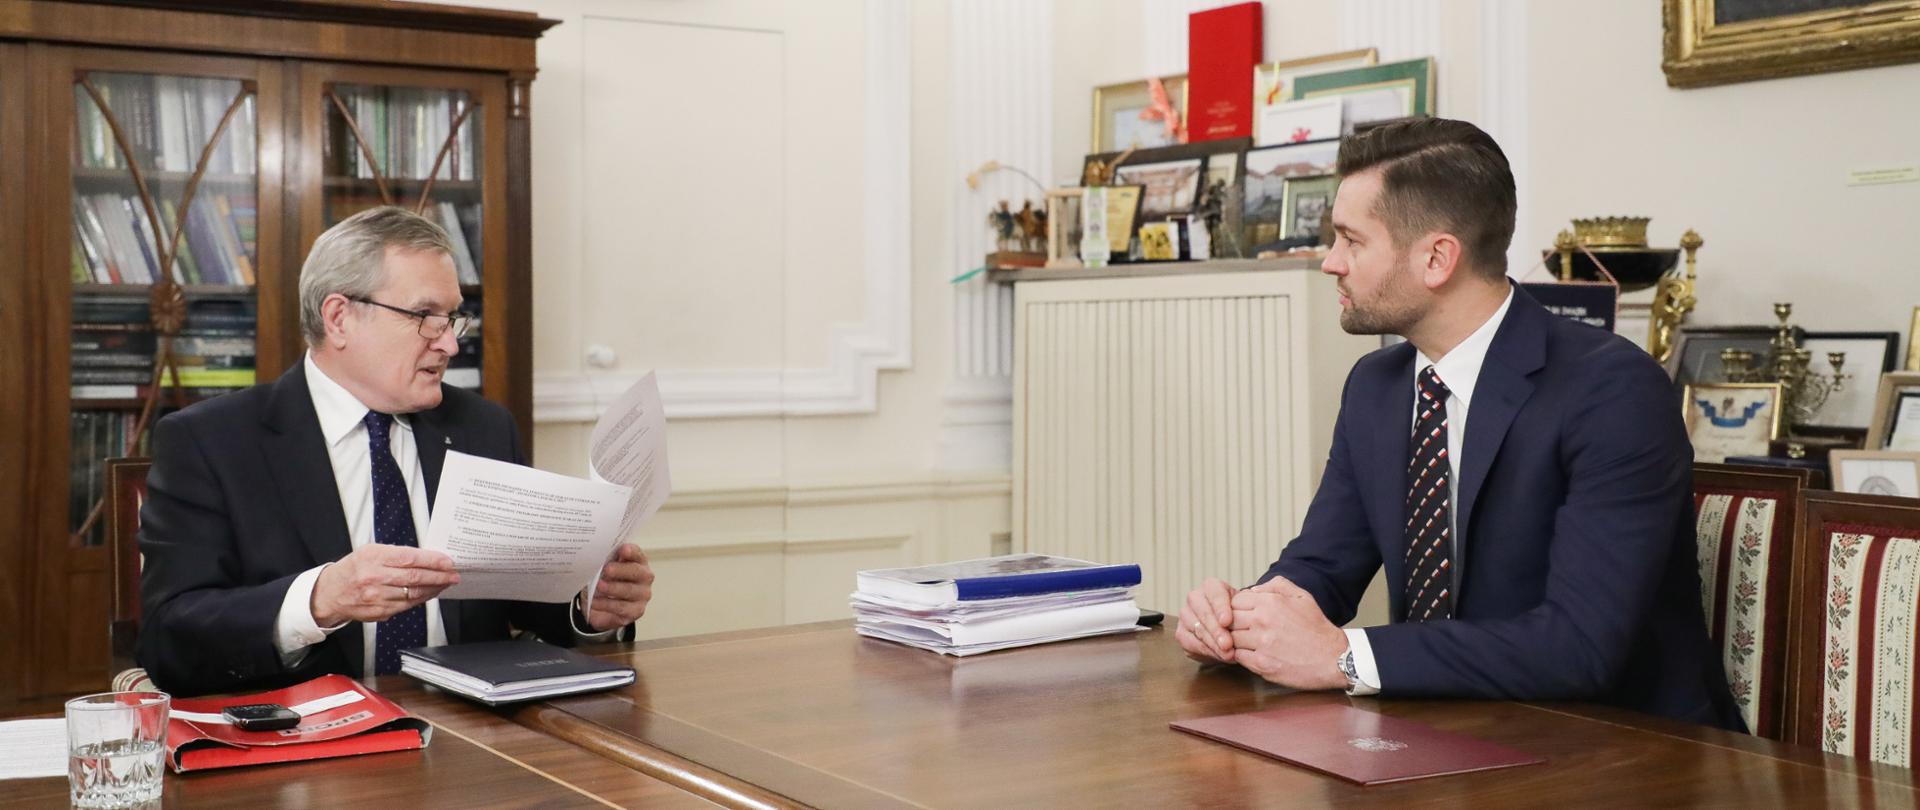 Spotkanie wicepremiera Piotra Glińskiego z nowopowołanym ministrem sportu i turystyki, fot. Danuta Matloch